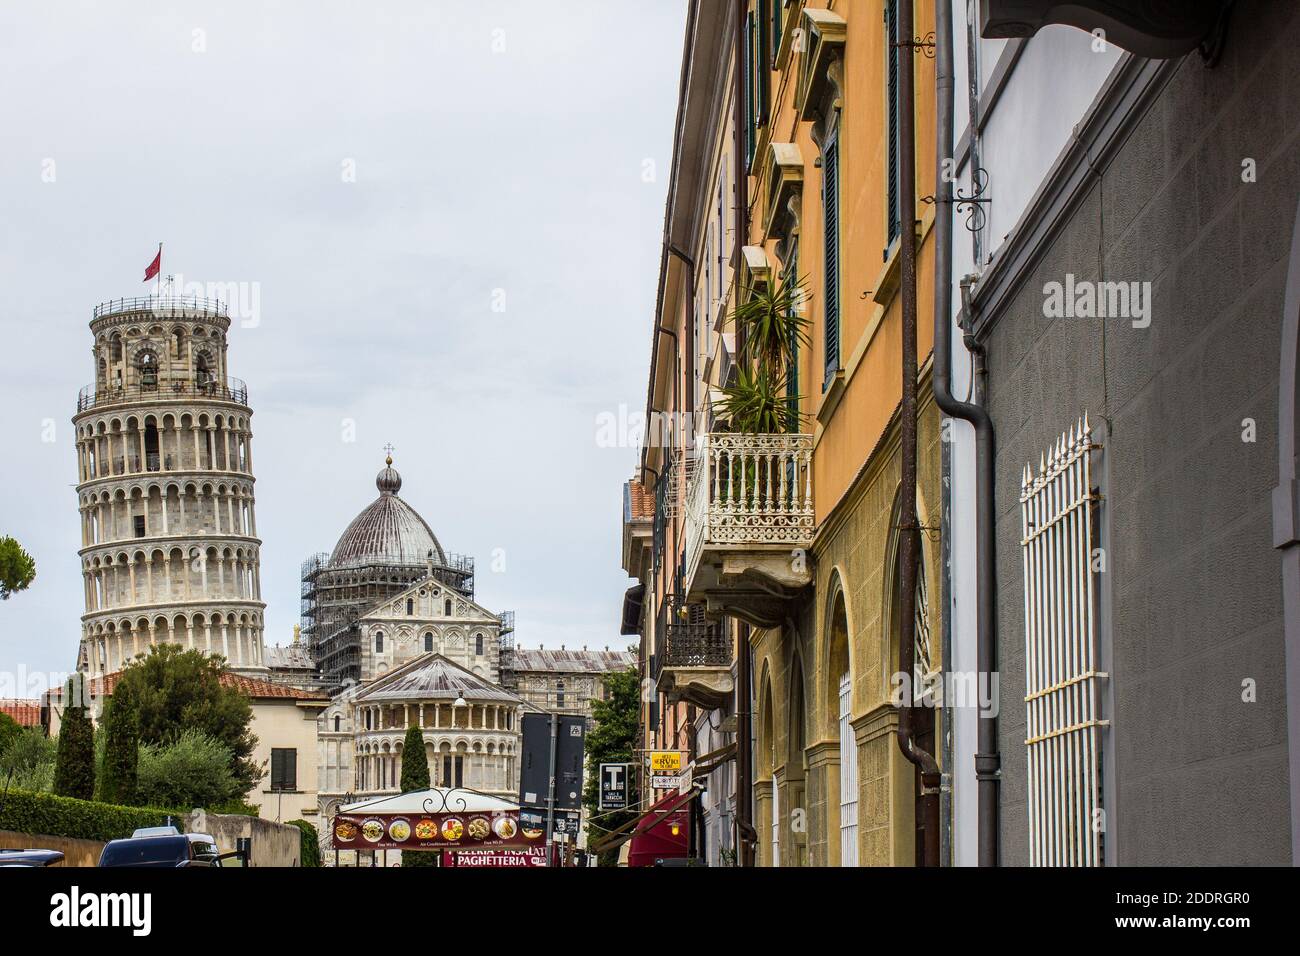 Pisa, Italia - 9 luglio 2017: Veduta della Cattedrale di Pisa e della Torre Pendente nel centro della città Foto Stock